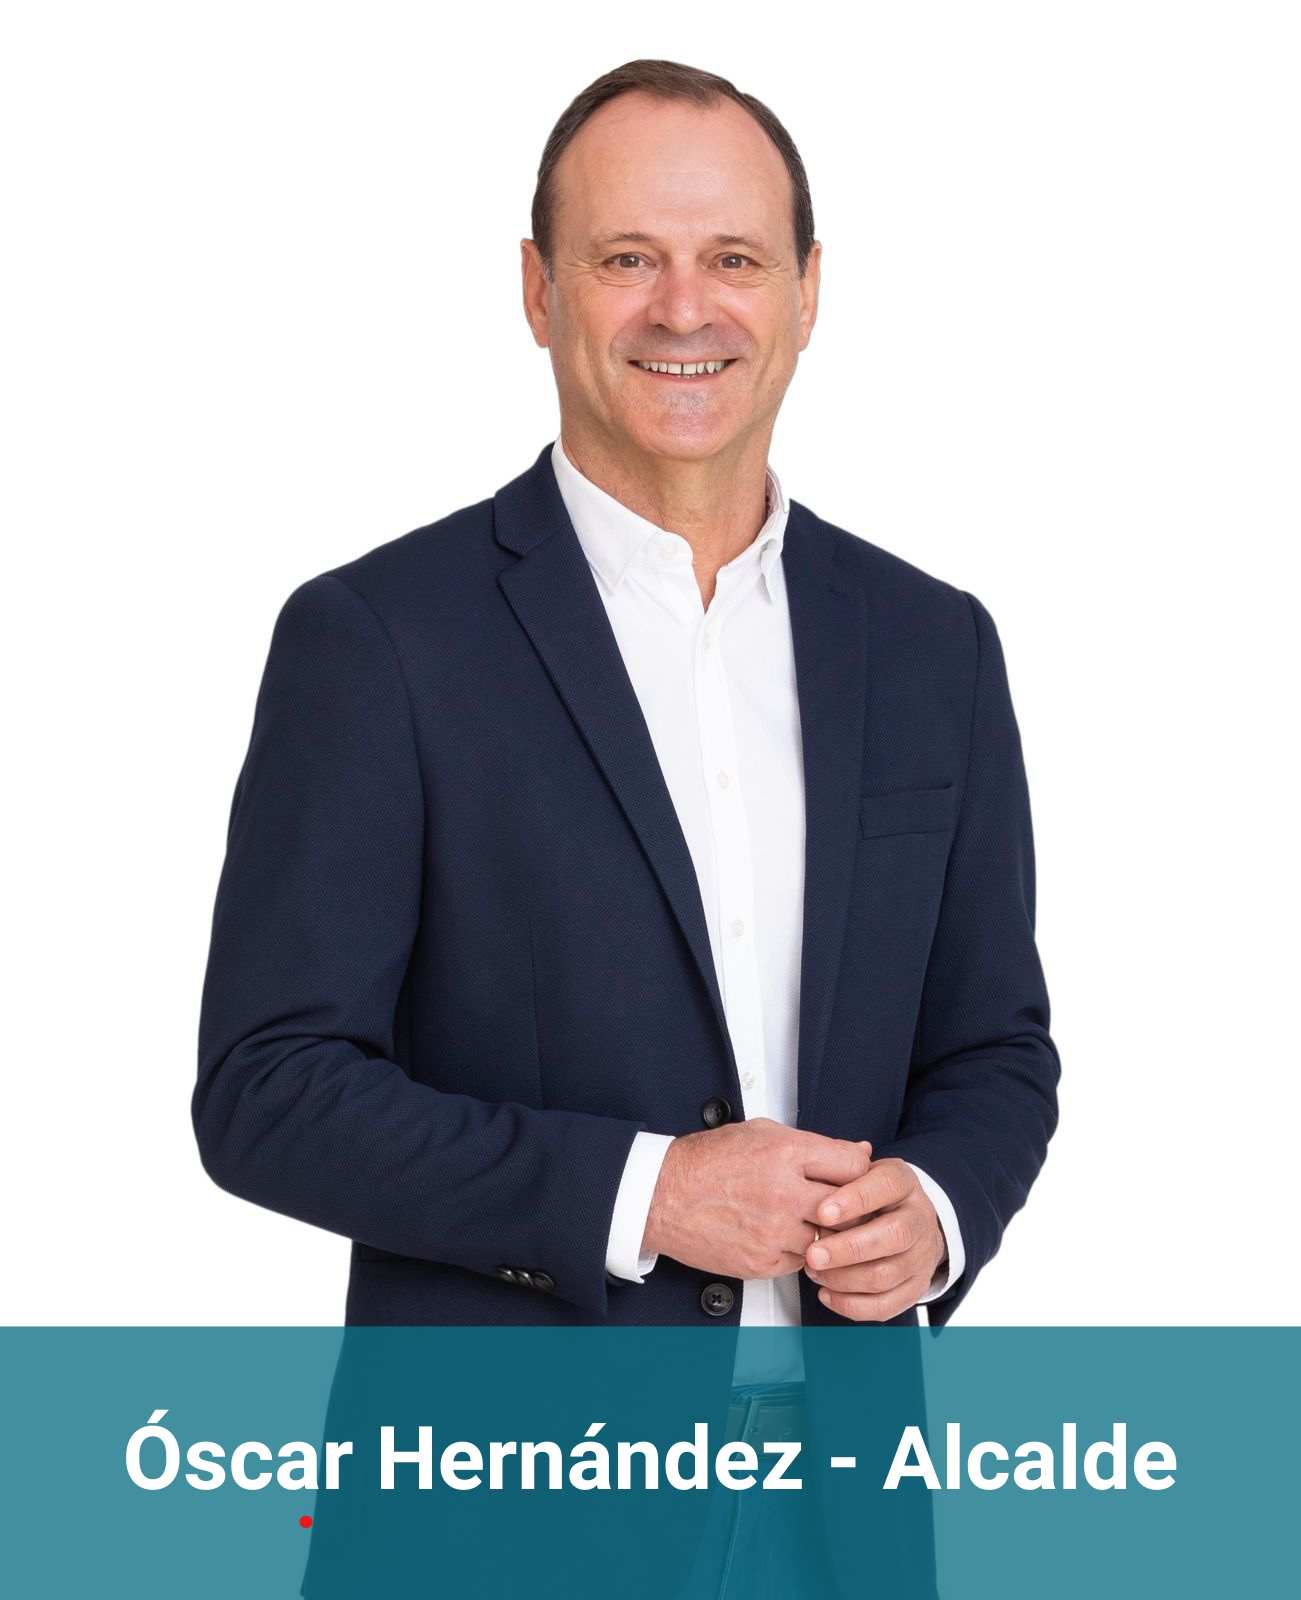 Óscar Hernández - Alcalde